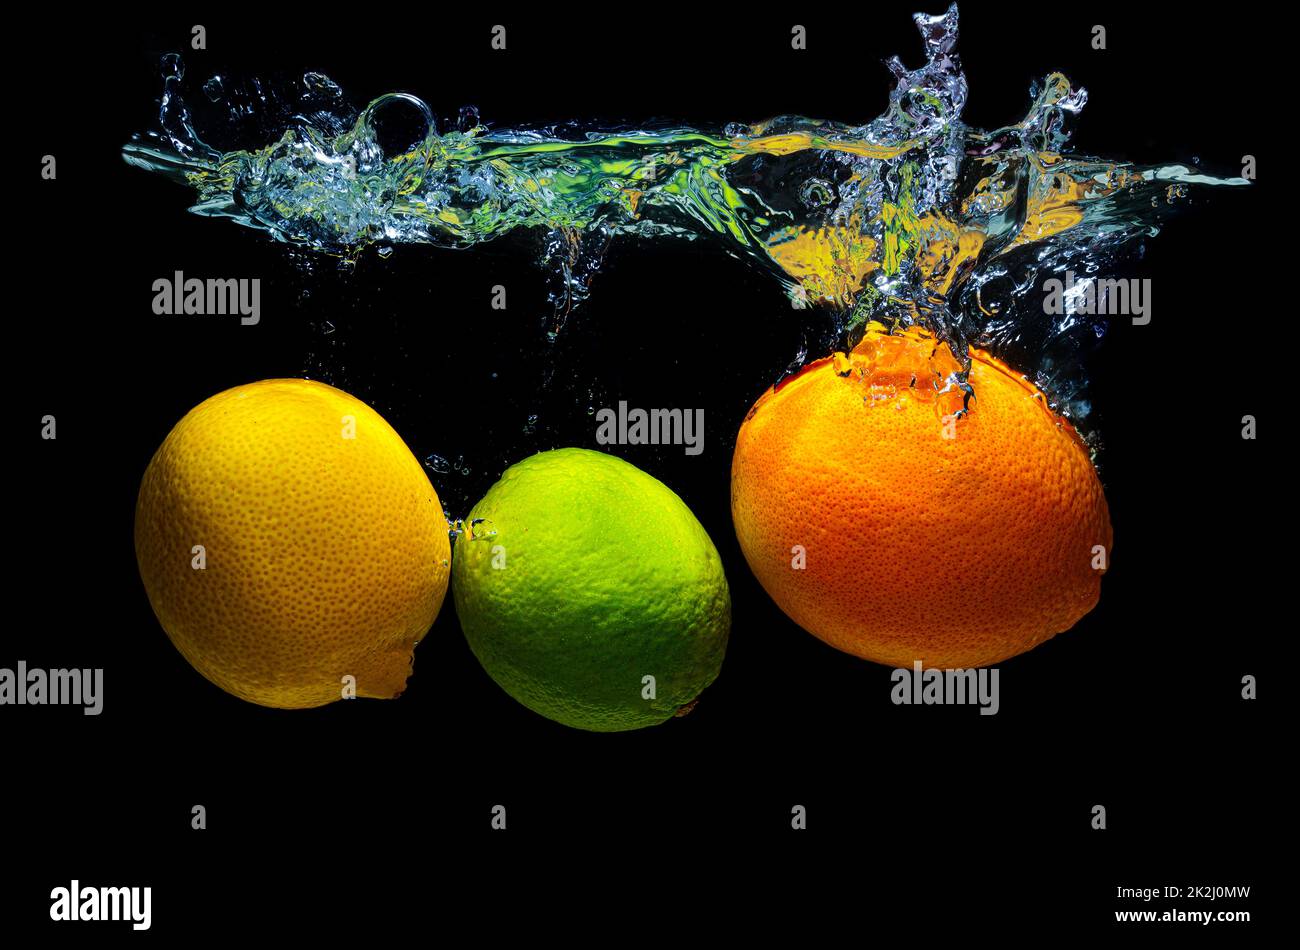 Lemon, kiwi and orange dropped in water with splashes isolated on black background. Stock Photo